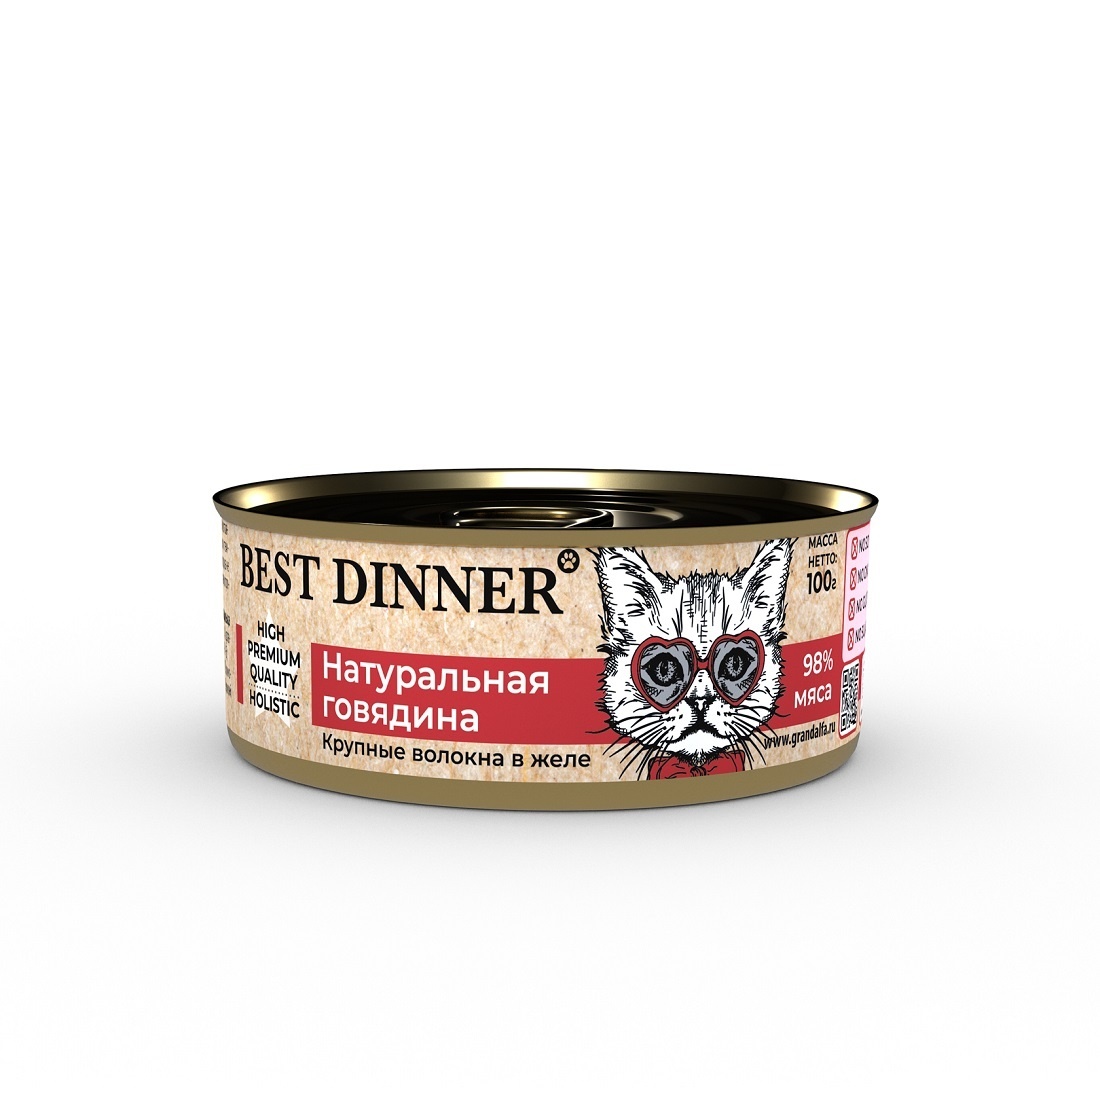 Best Dinner Best Dinner консервы для кошек в желе Натуральная говядина (100 г)